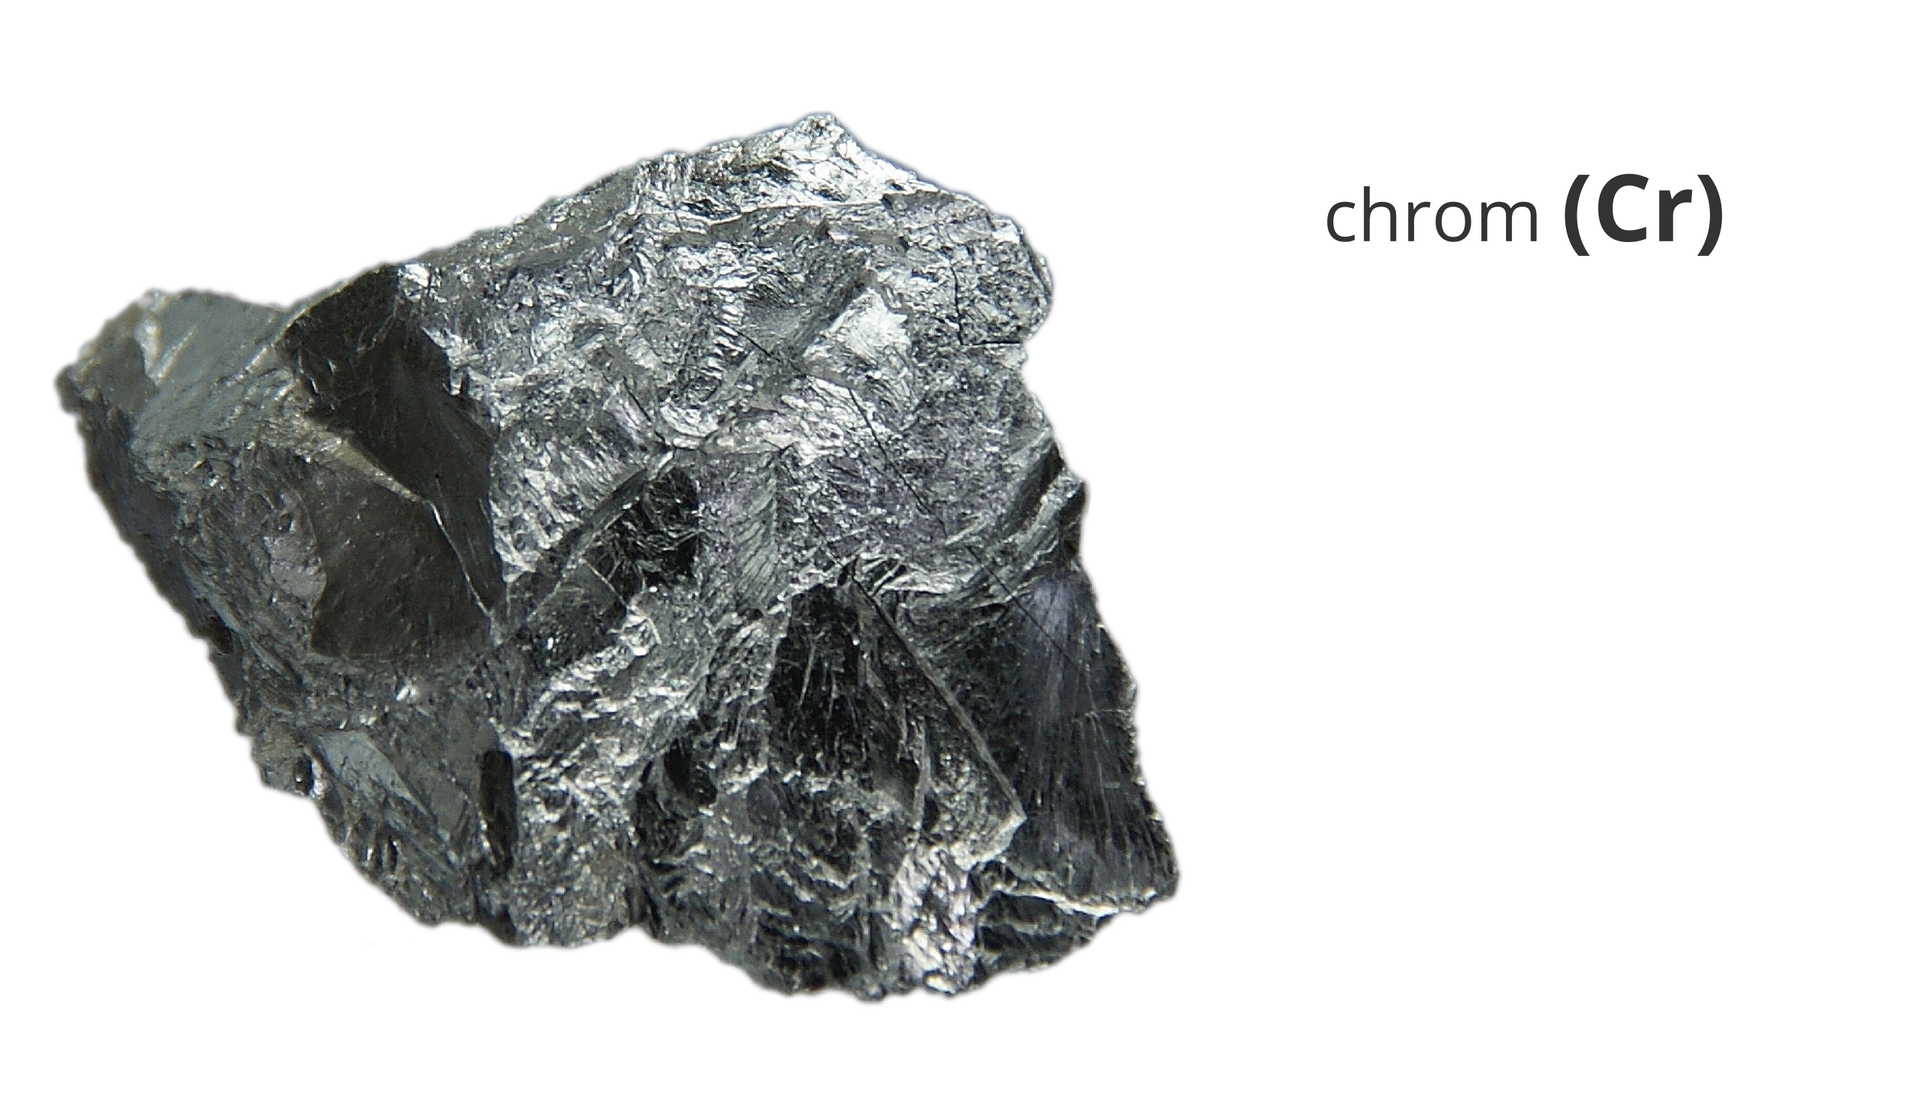 Zdjęcie przedstawia kawałek metalicznego chromu. Obok widnieje napis chrom i jego symbol Cr.